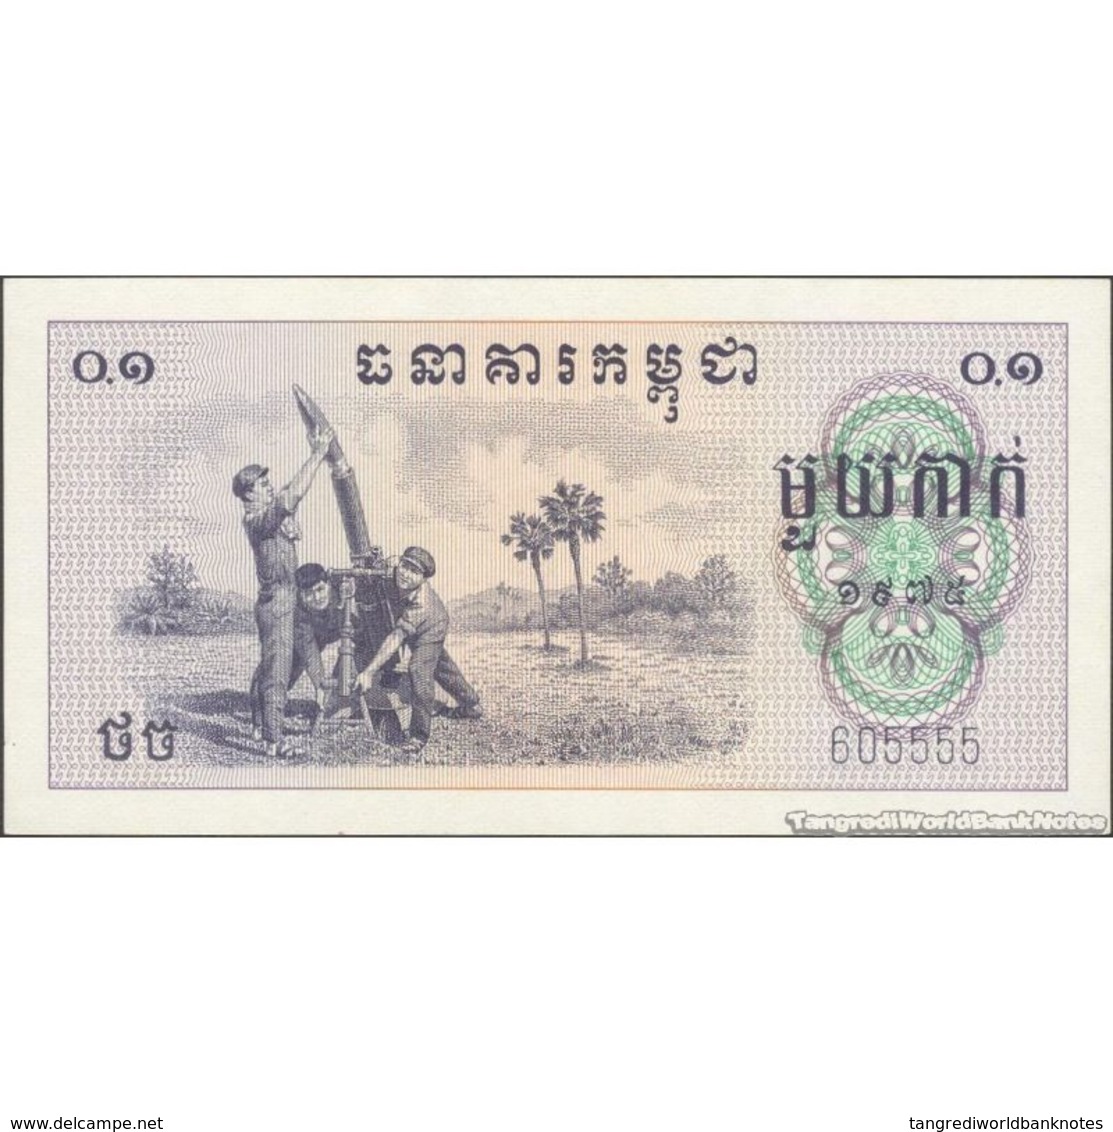 TWN - CAMBODIA 18a - 1 Kak 1975 Pol Pot, Khmer Rouge - 605551 AU/UNC5 - Cambodia